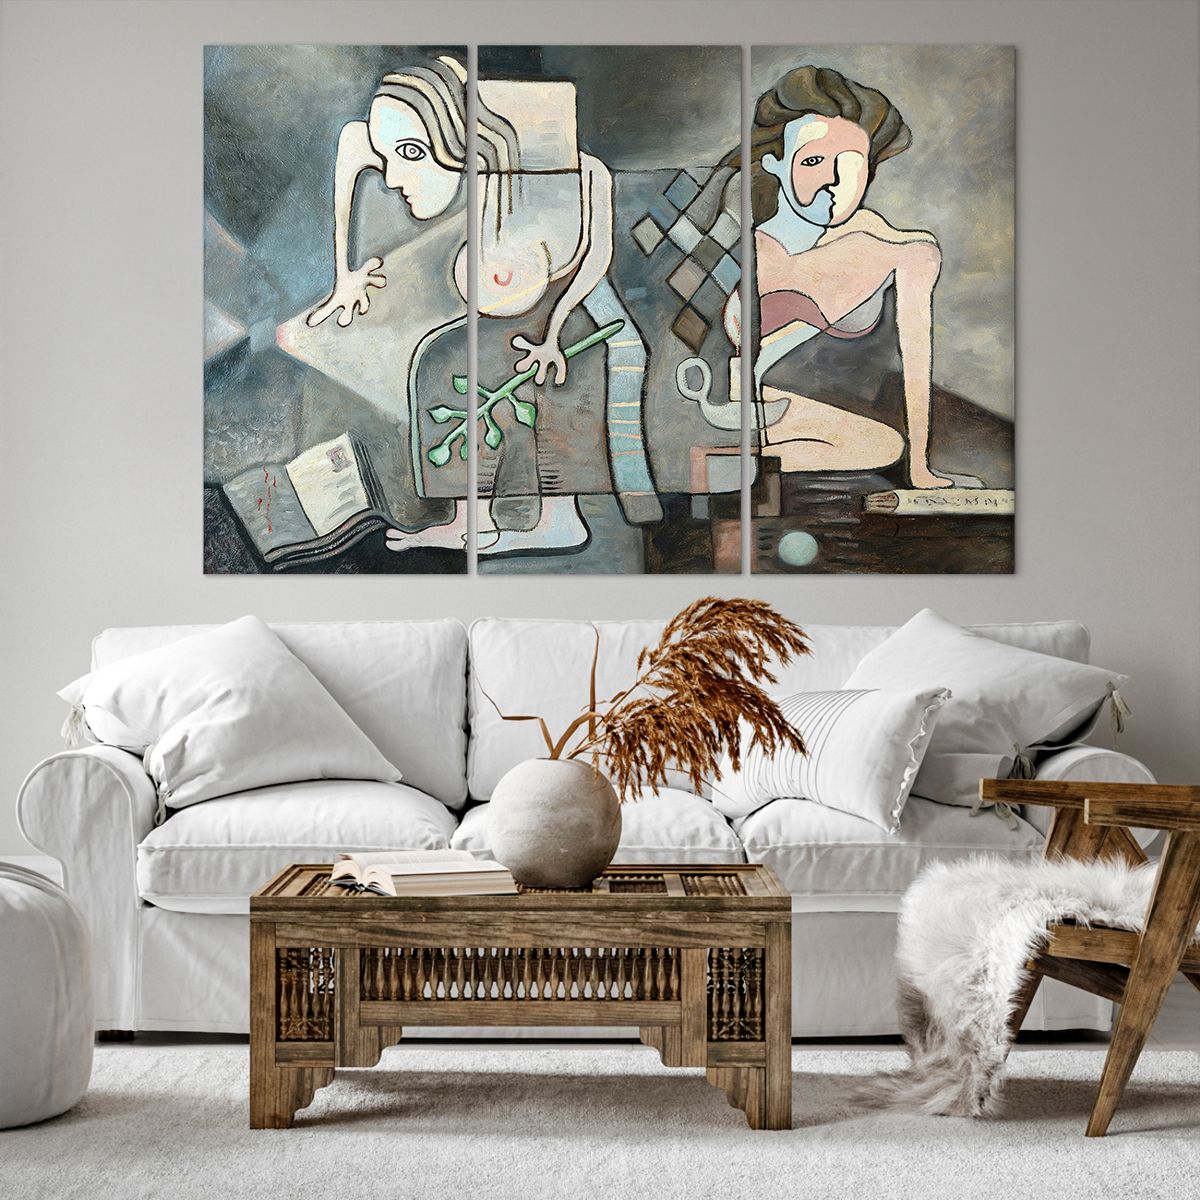 Bild auf Leinwand Abstraktion, Bild auf Leinwand Kubismus, Bild auf Leinwand Personen, Bild auf Leinwand Kunst, Bild auf Leinwand Malerei